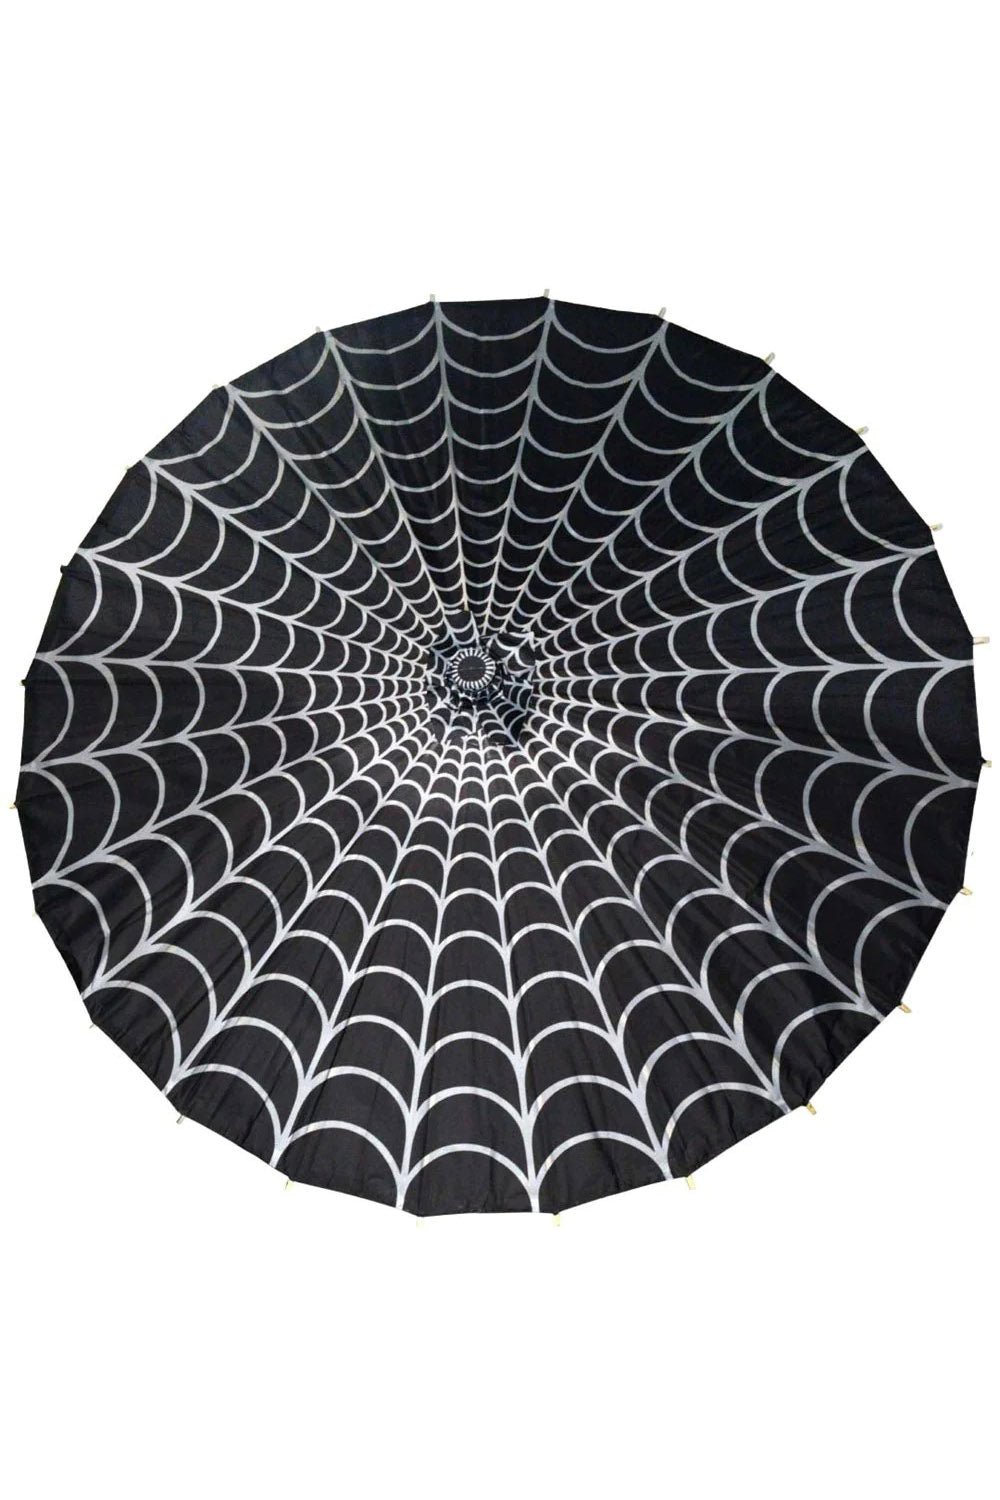 Spiderweb Fabric Parasol [GREY/BLACK]